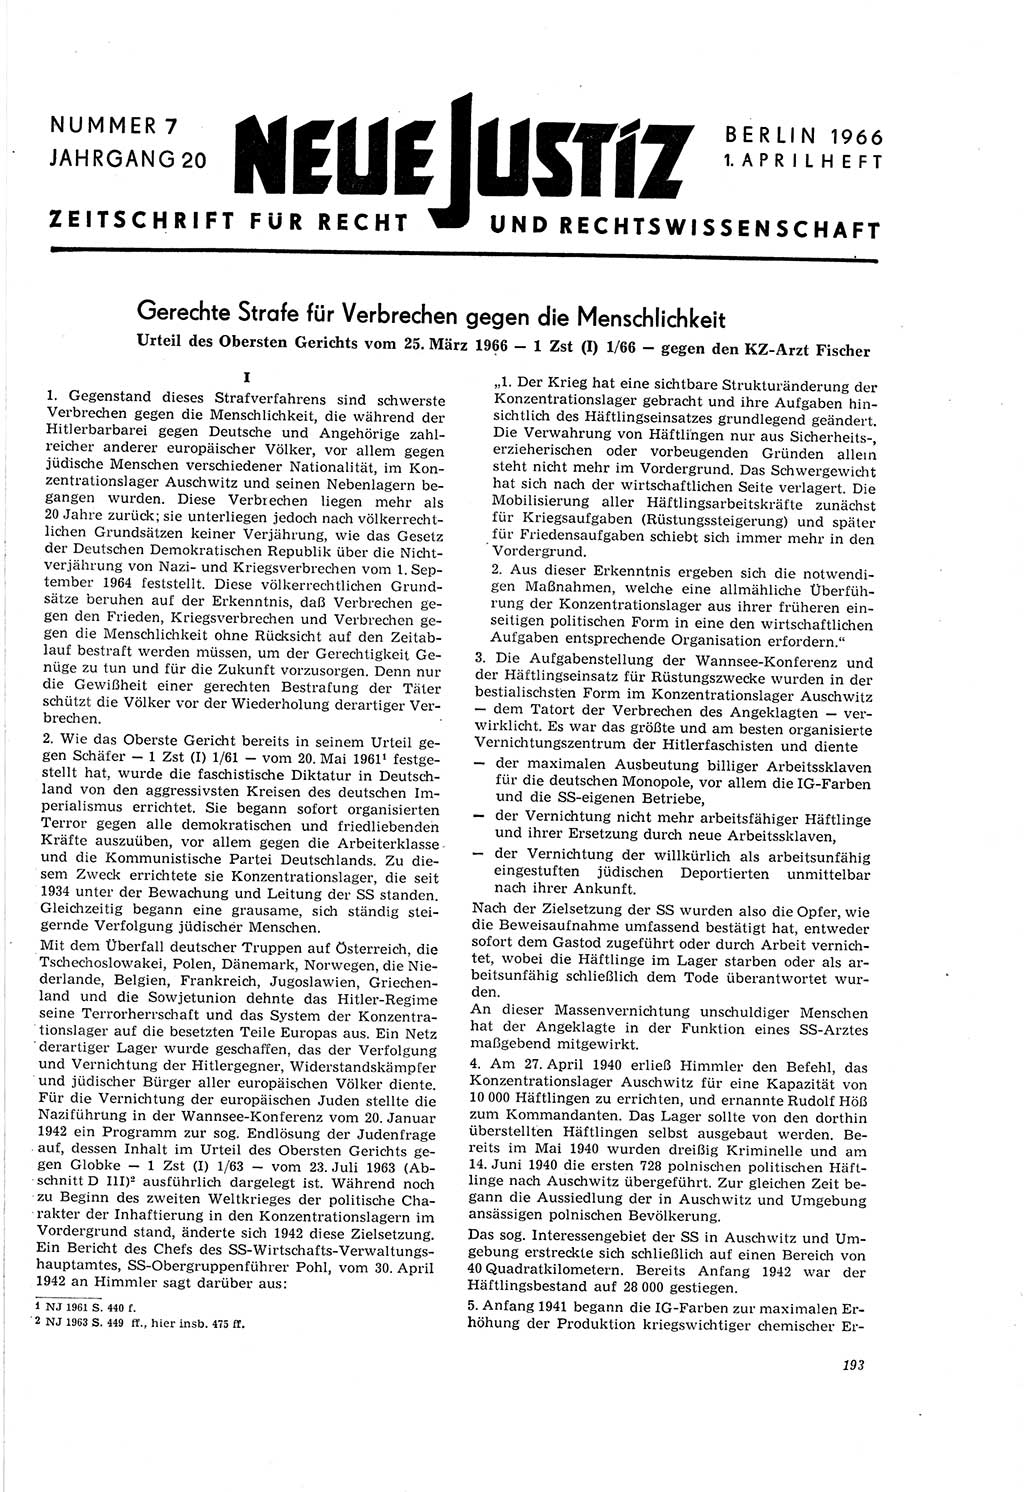 Neue Justiz (NJ), Zeitschrift für Recht und Rechtswissenschaft [Deutsche Demokratische Republik (DDR)], 20. Jahrgang 1966, Seite 193 (NJ DDR 1966, S. 193)